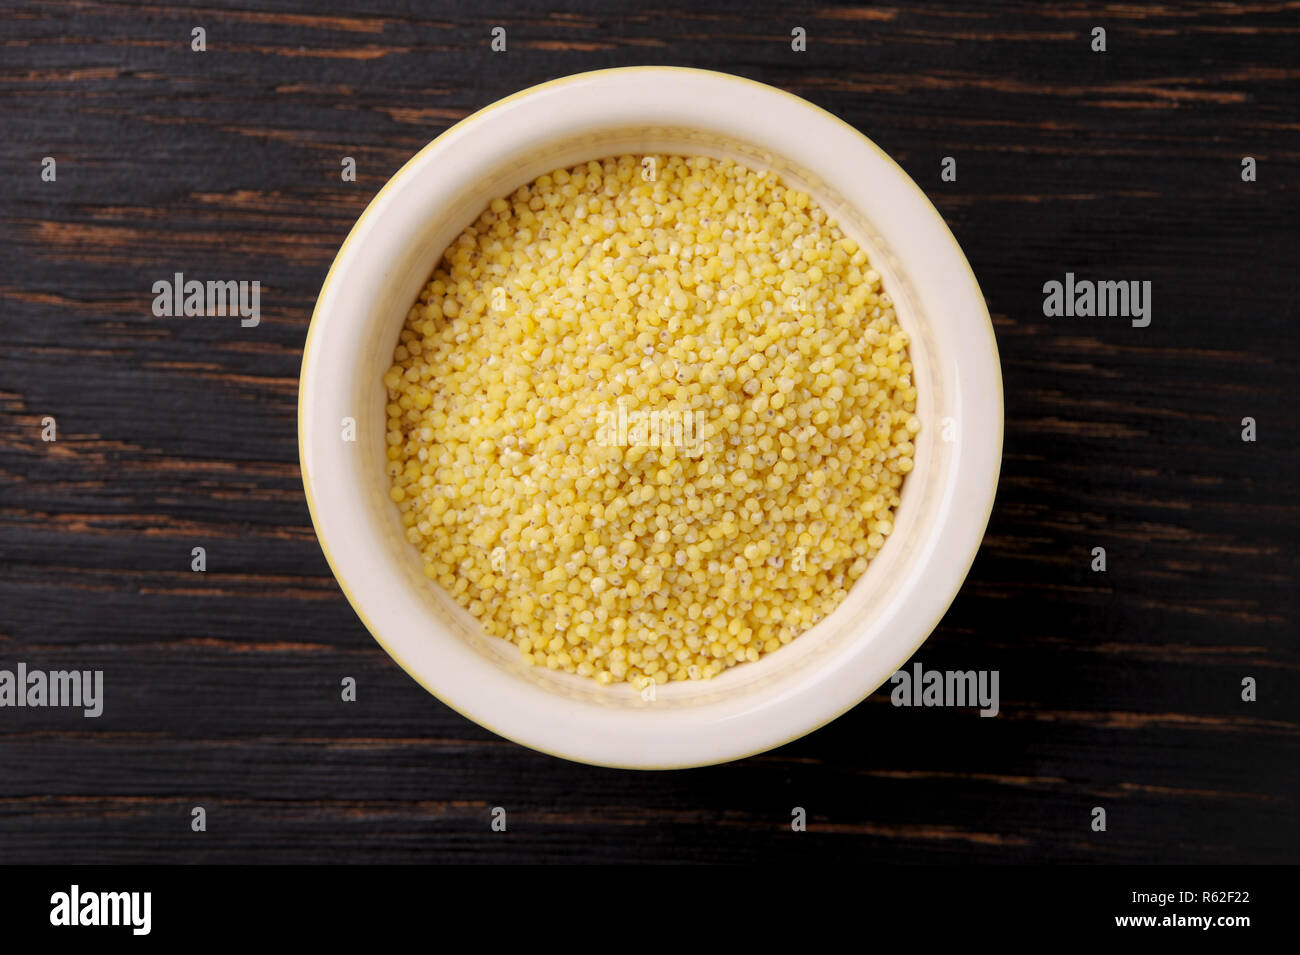 Graines de millet bio dans un bol en céramique noire en bois sur la table rustique. Le Millet peut être utilisé pour un régime alimentaire sans gluten.vue en gros plan. Banque D'Images